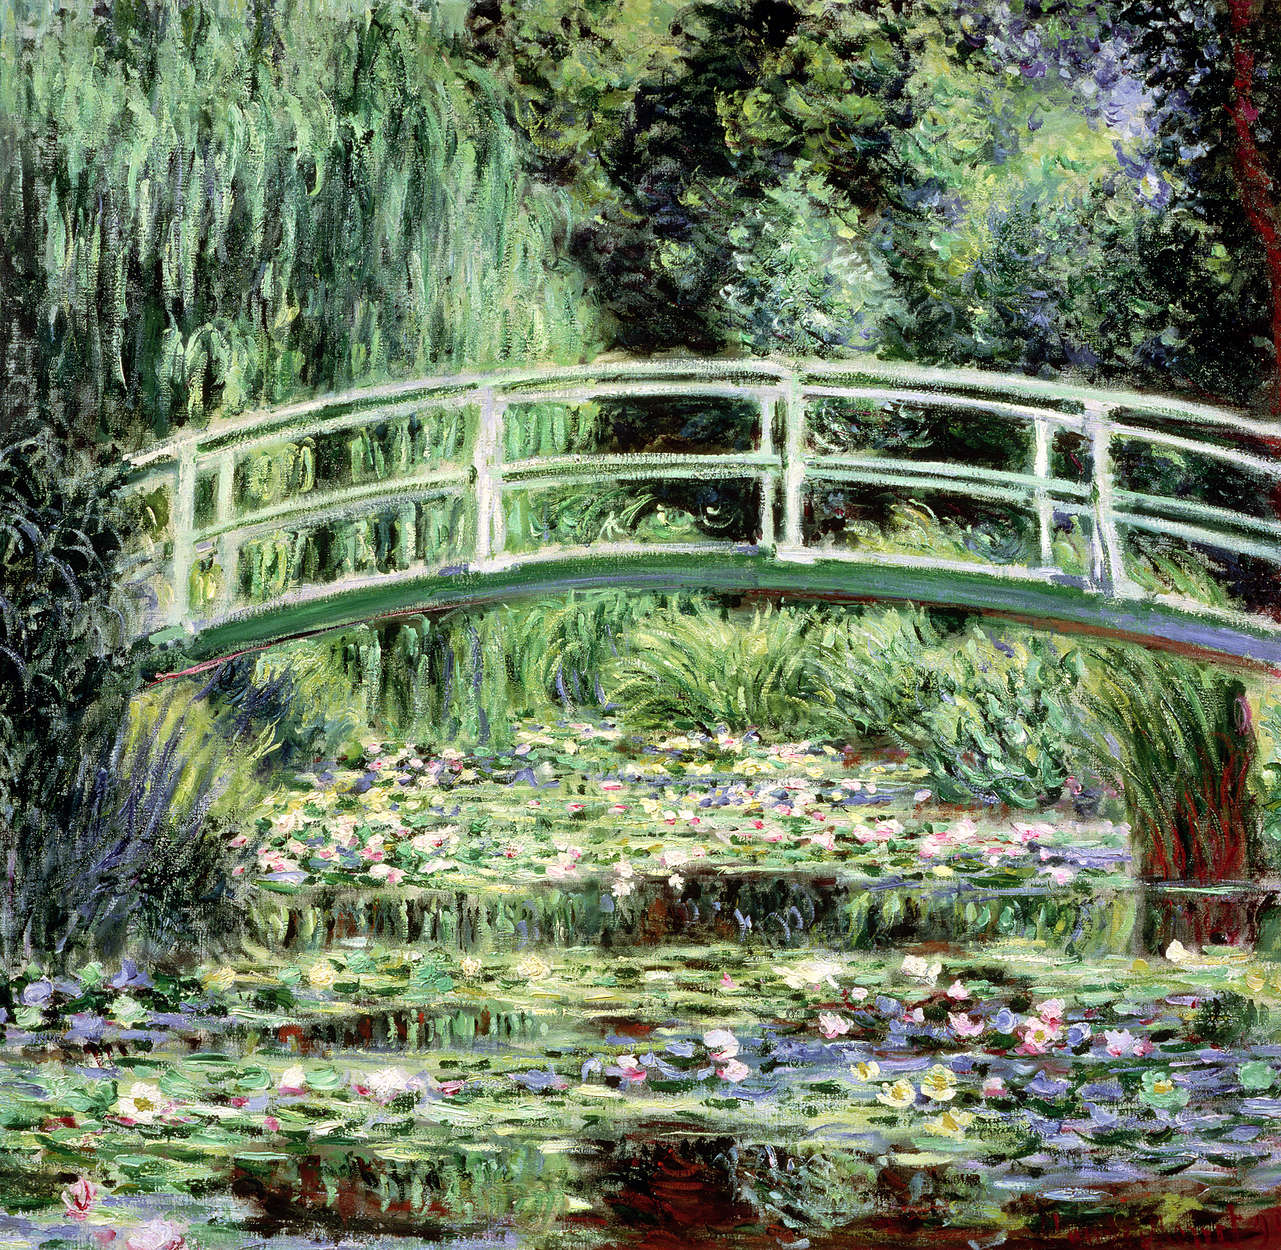             Witte waterlelies" muurschildering van Claude Monet
        